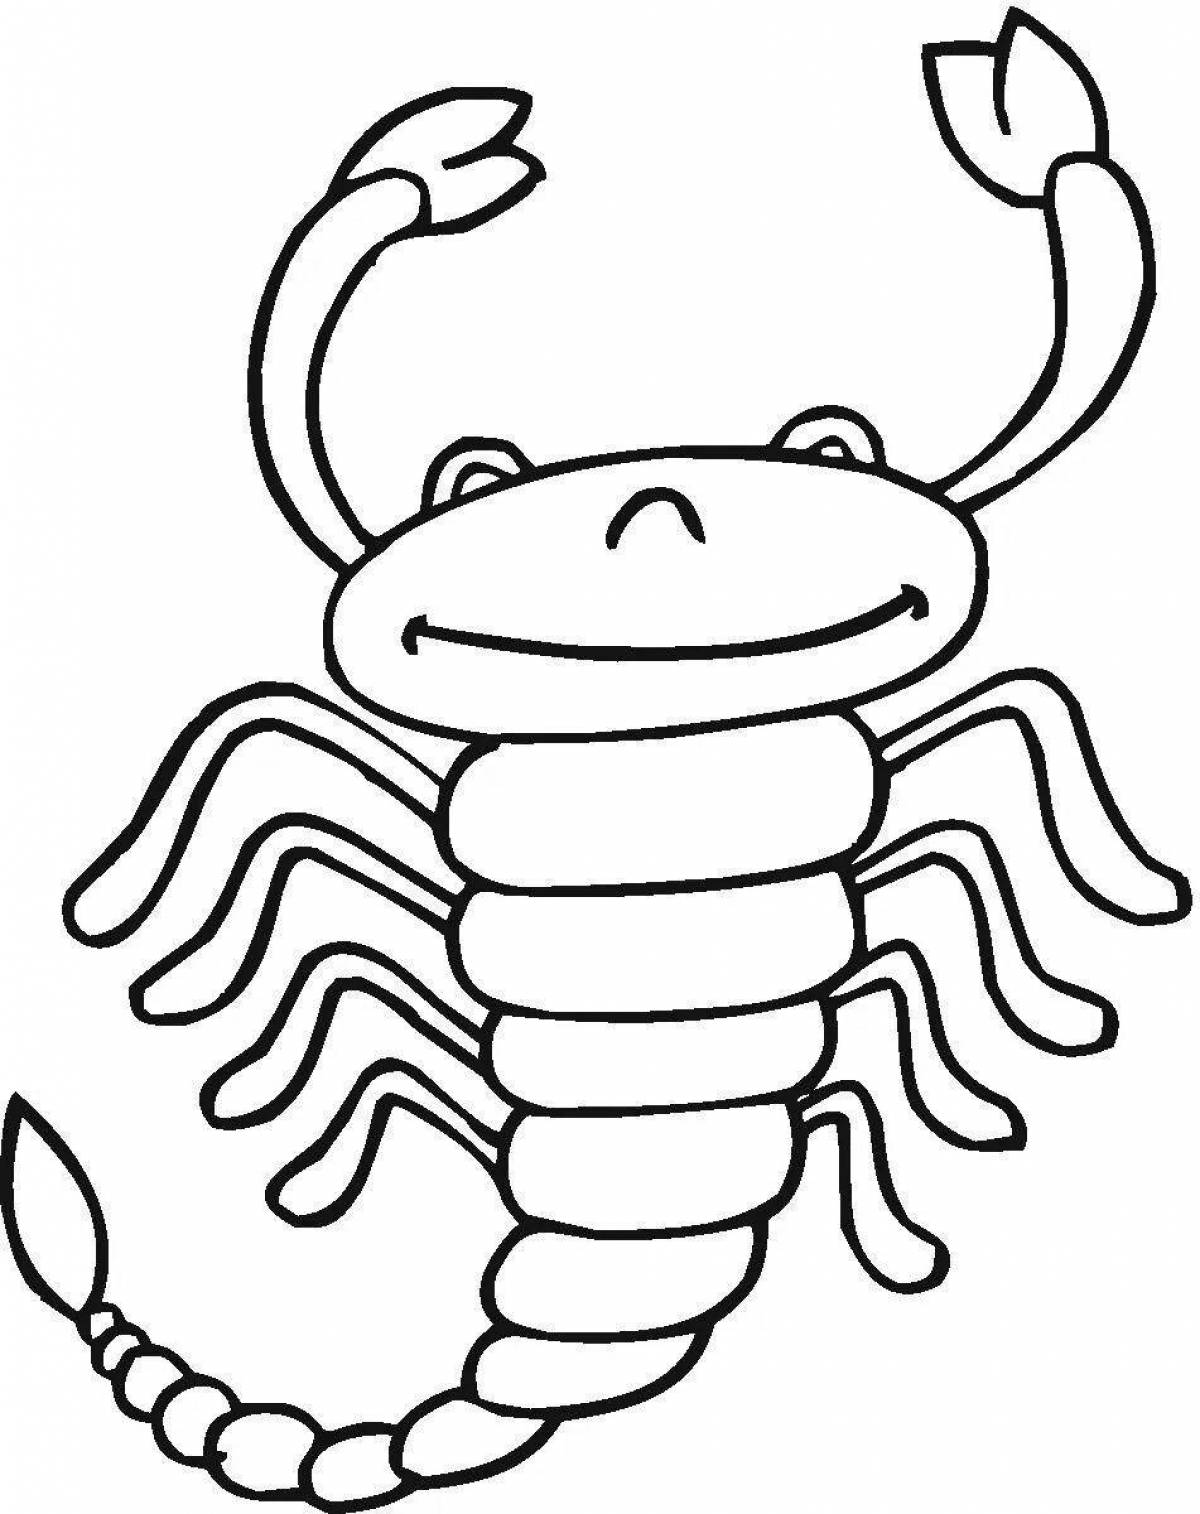 Блестящая раскраска скорпион для детей